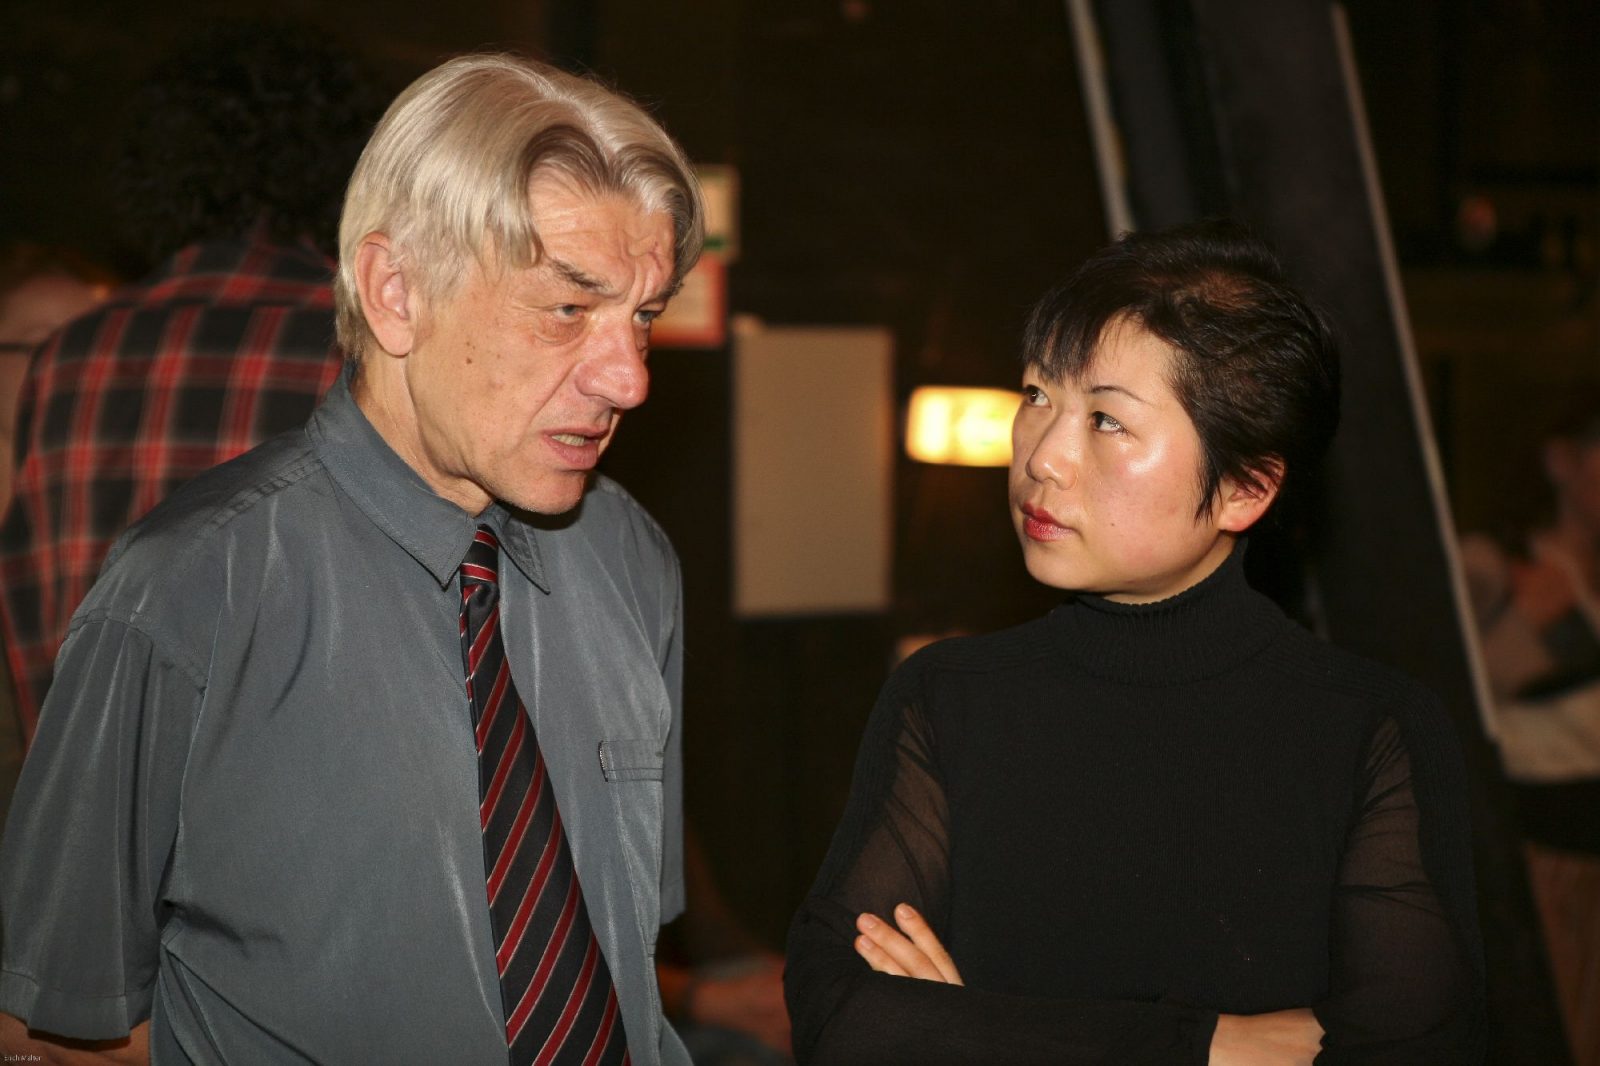 Älterer Mann mit Hemd und Krawatte im Gespräch mit einer asiatiscehn Frau in Schwarz und kurzen Haaren.